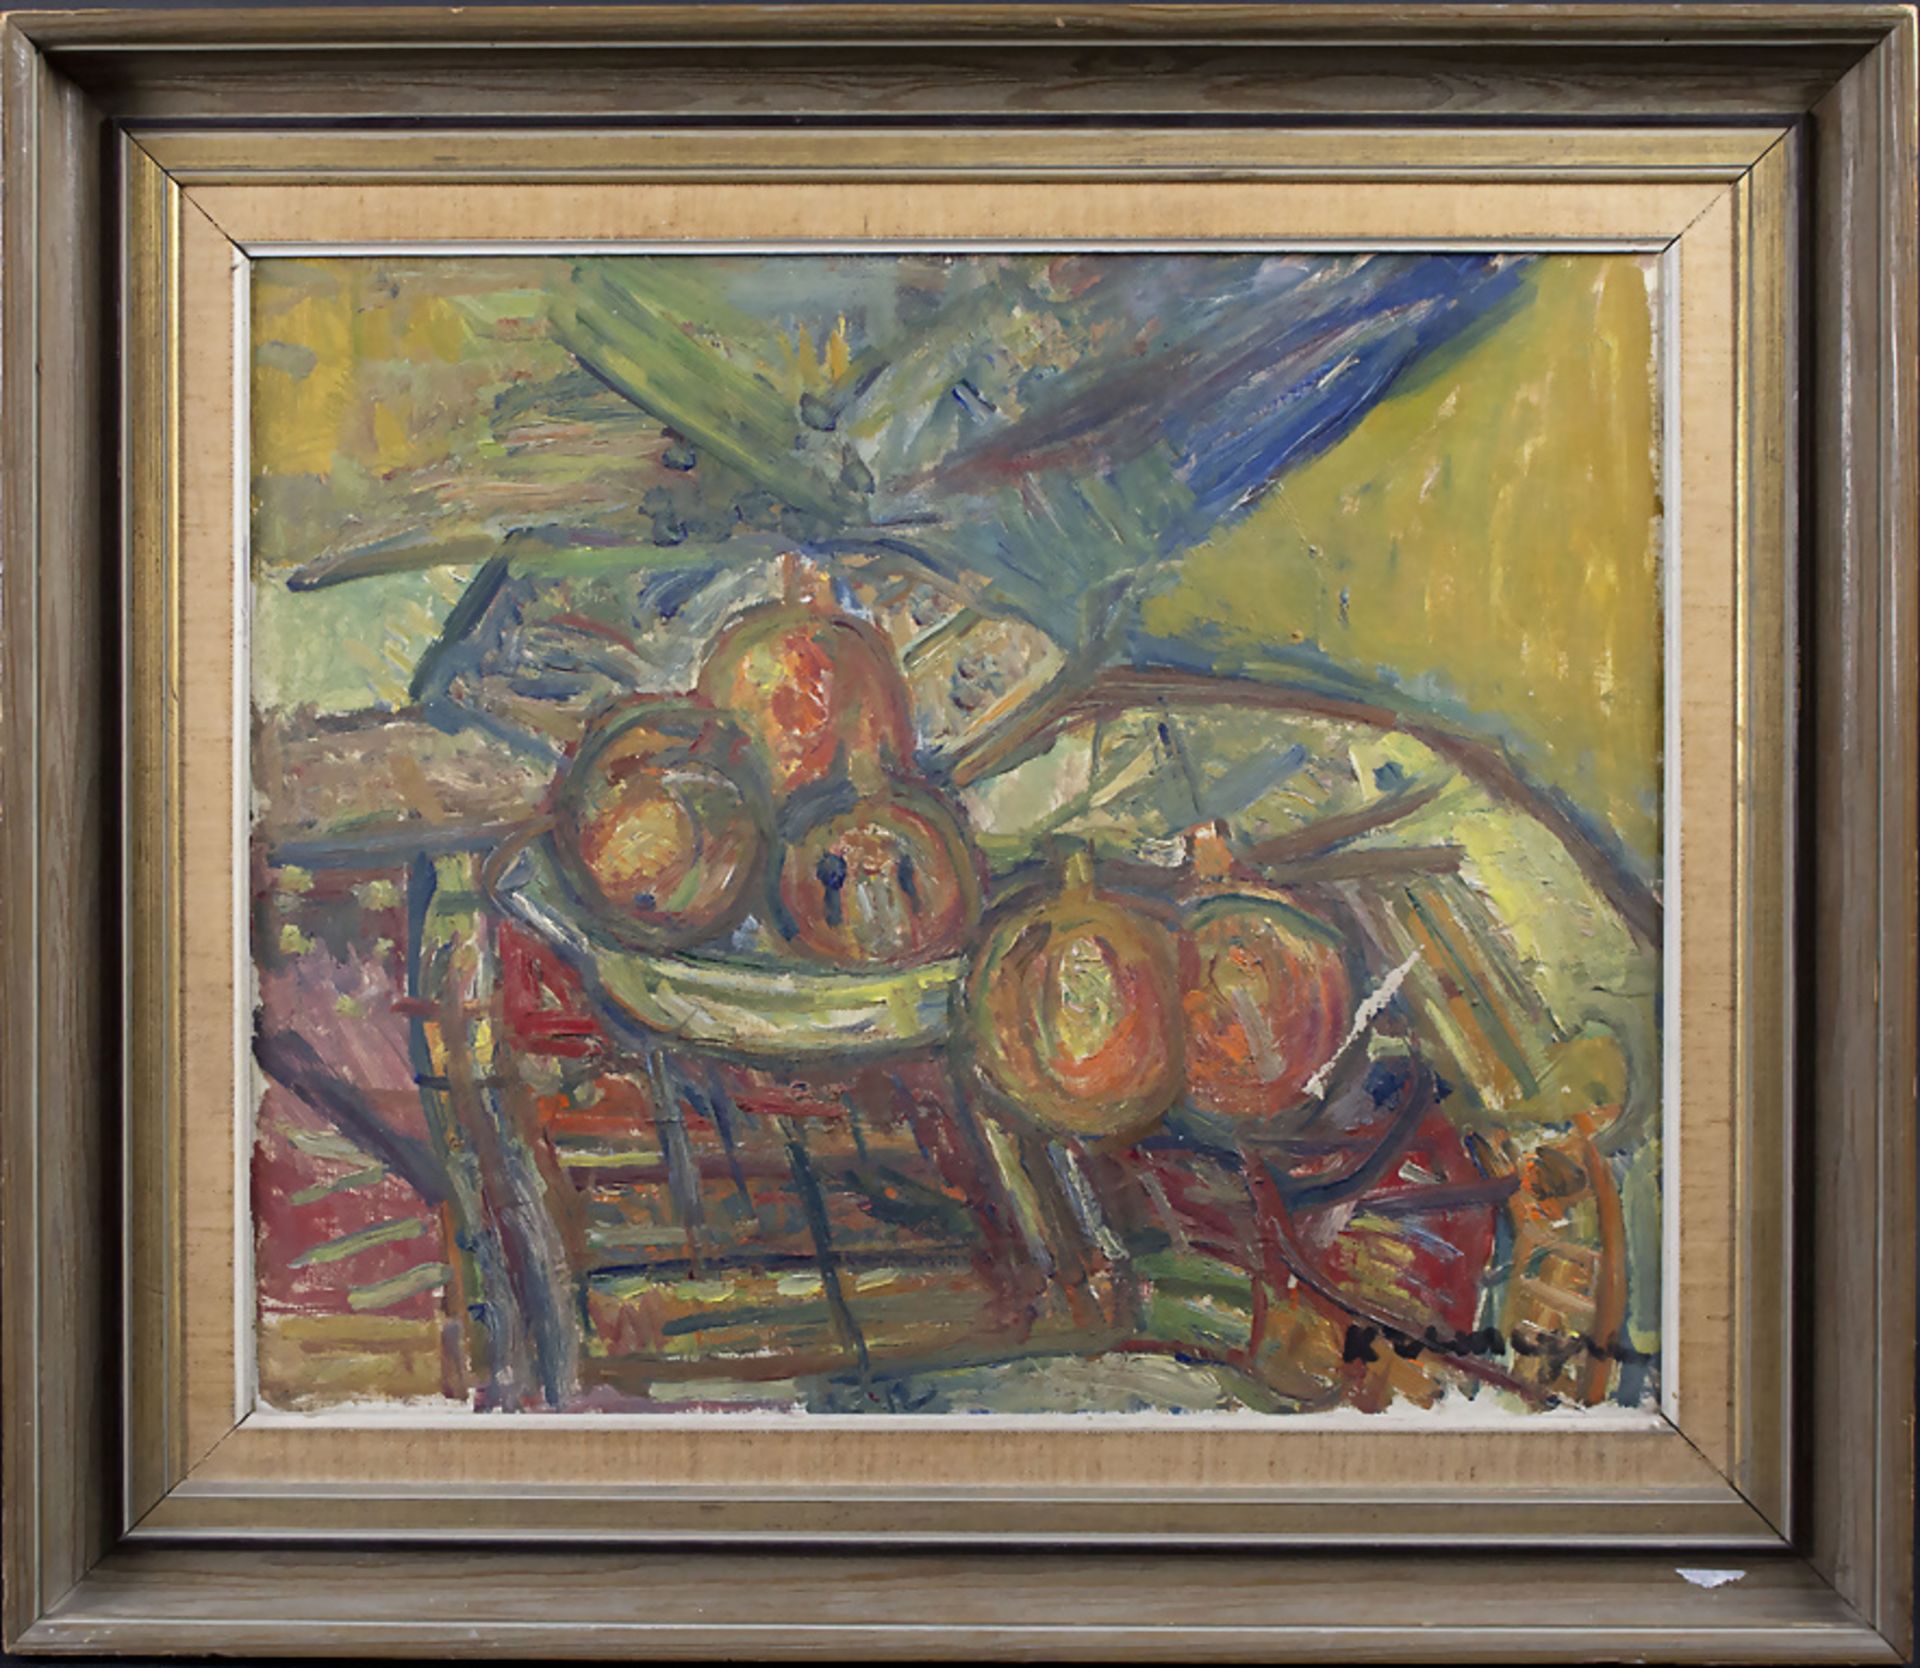 Pinchus KREMEGNE (1890-1981), 'Stillleben mit Zitrusfrüchten' / 'Still life with citrus fruits' - Image 2 of 5